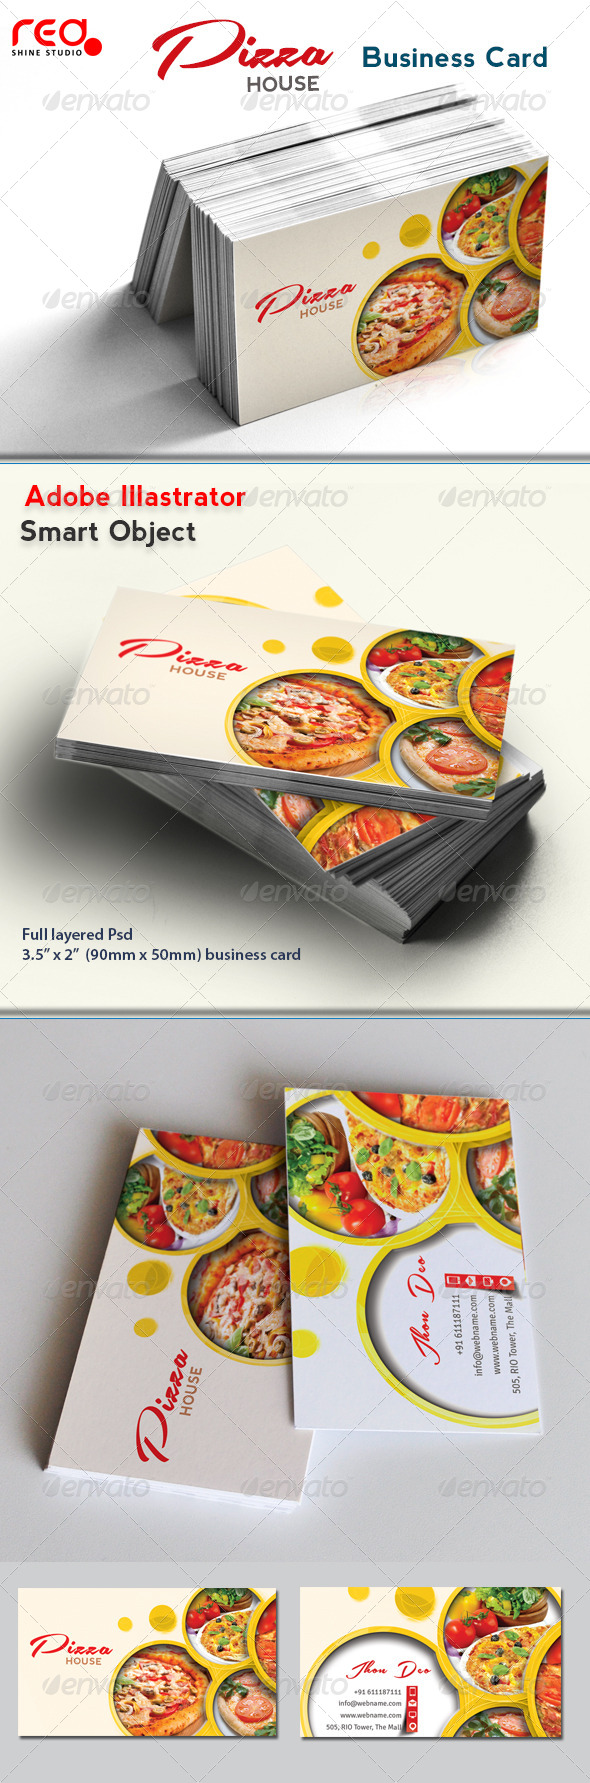 restaurant business card psd template